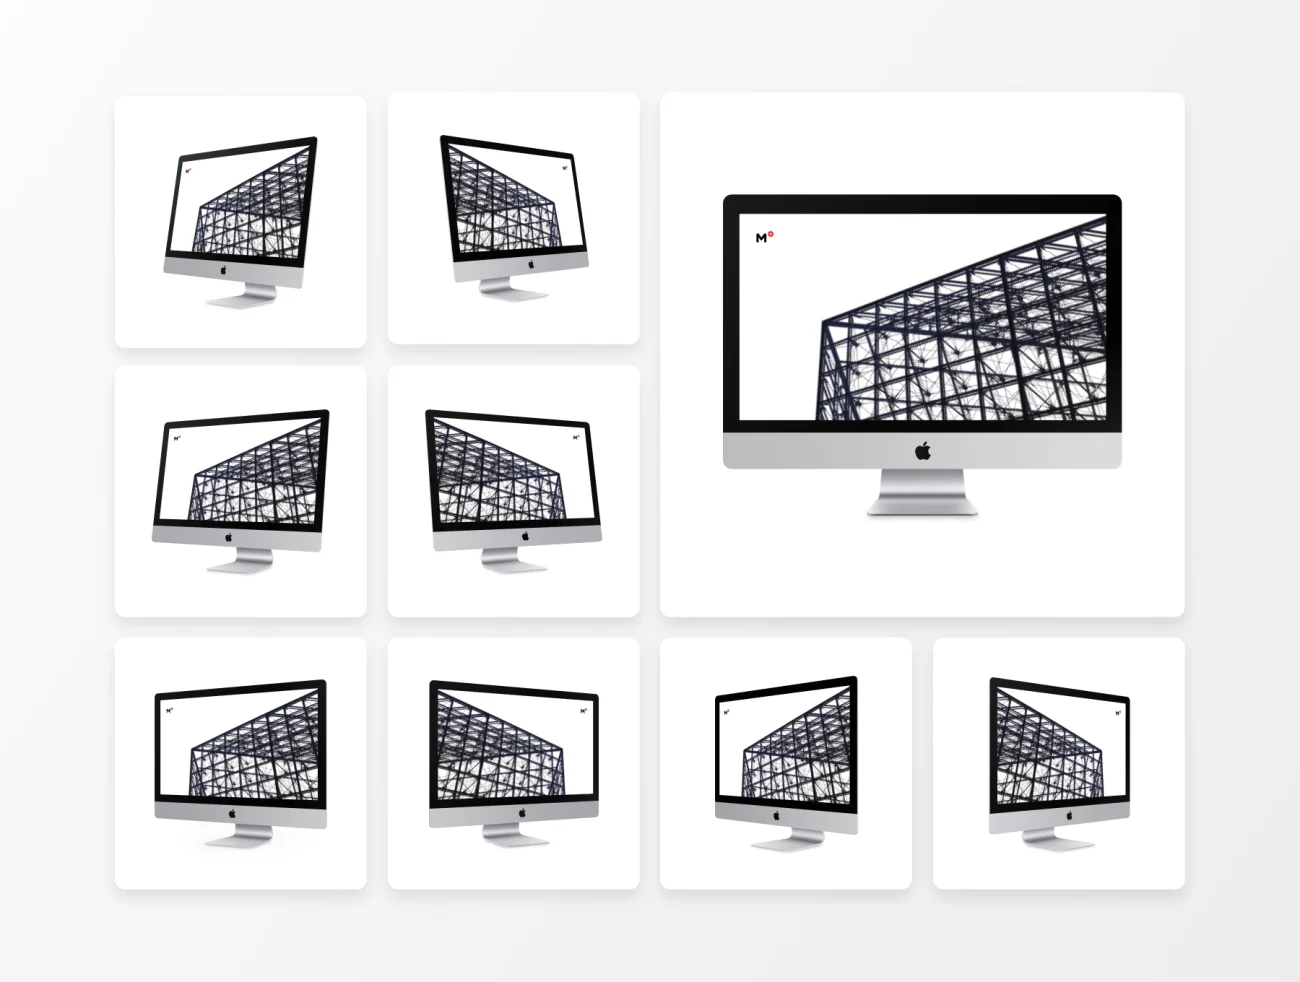 9款最流行的iMac Pro样机套件 Top 9 iMac Pro Mockups-产品展示、优雅样机、创意展示、办公样机、样机、简约样机、苹果设备-到位啦UI